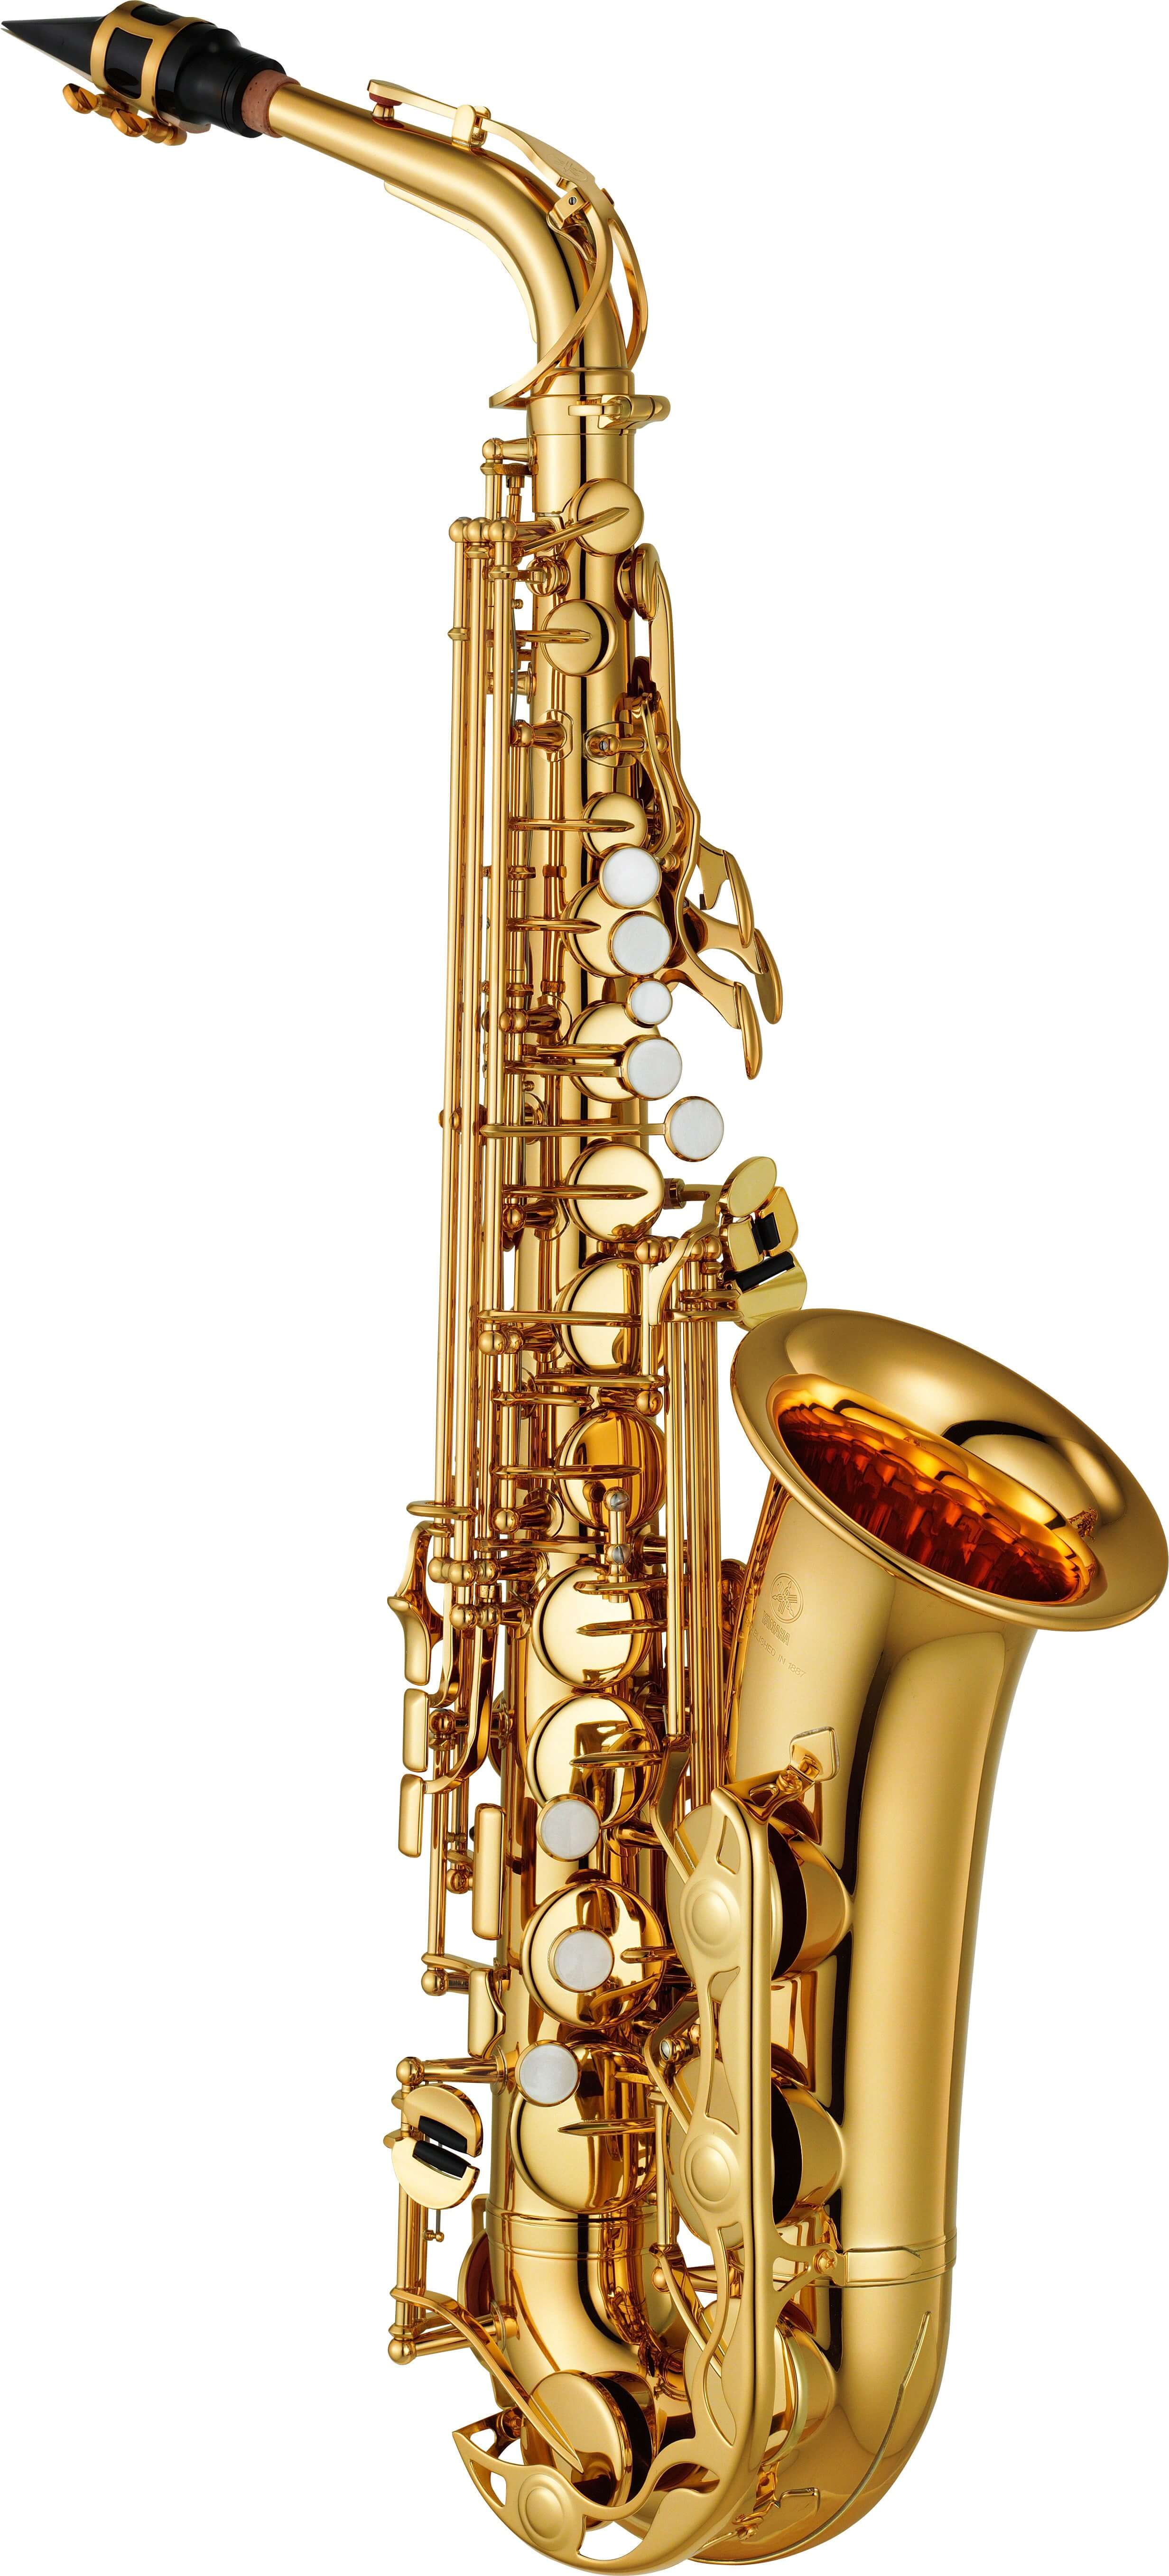 Saxofón Alto Yamaha Yas-280 Lacado